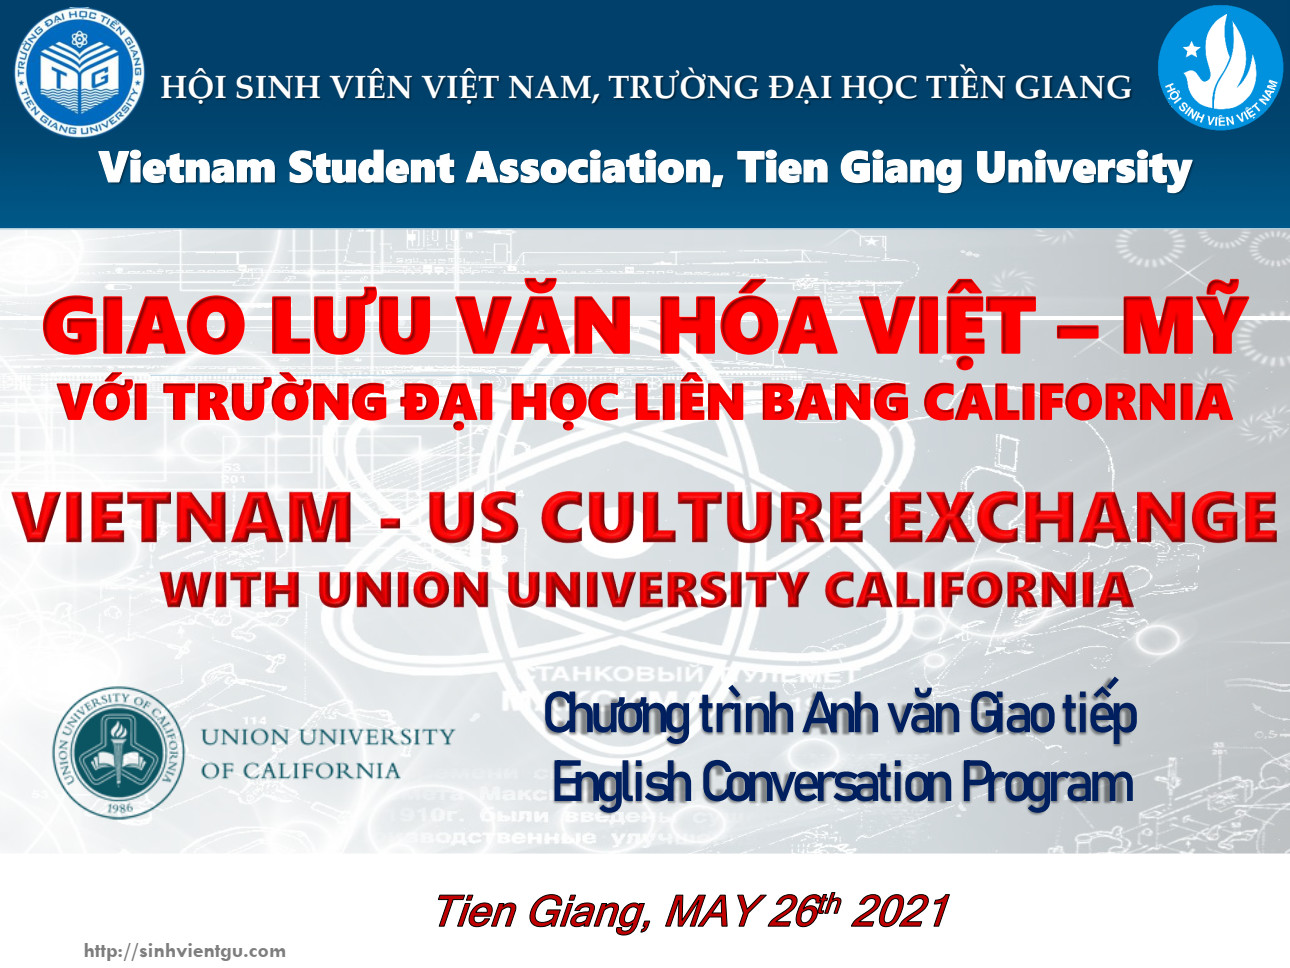 Hoạt động trao đổi văn hóa Việt - Mỹ giữa Trường Đại học Tiền Giang và Trường Đại học Liên bang California